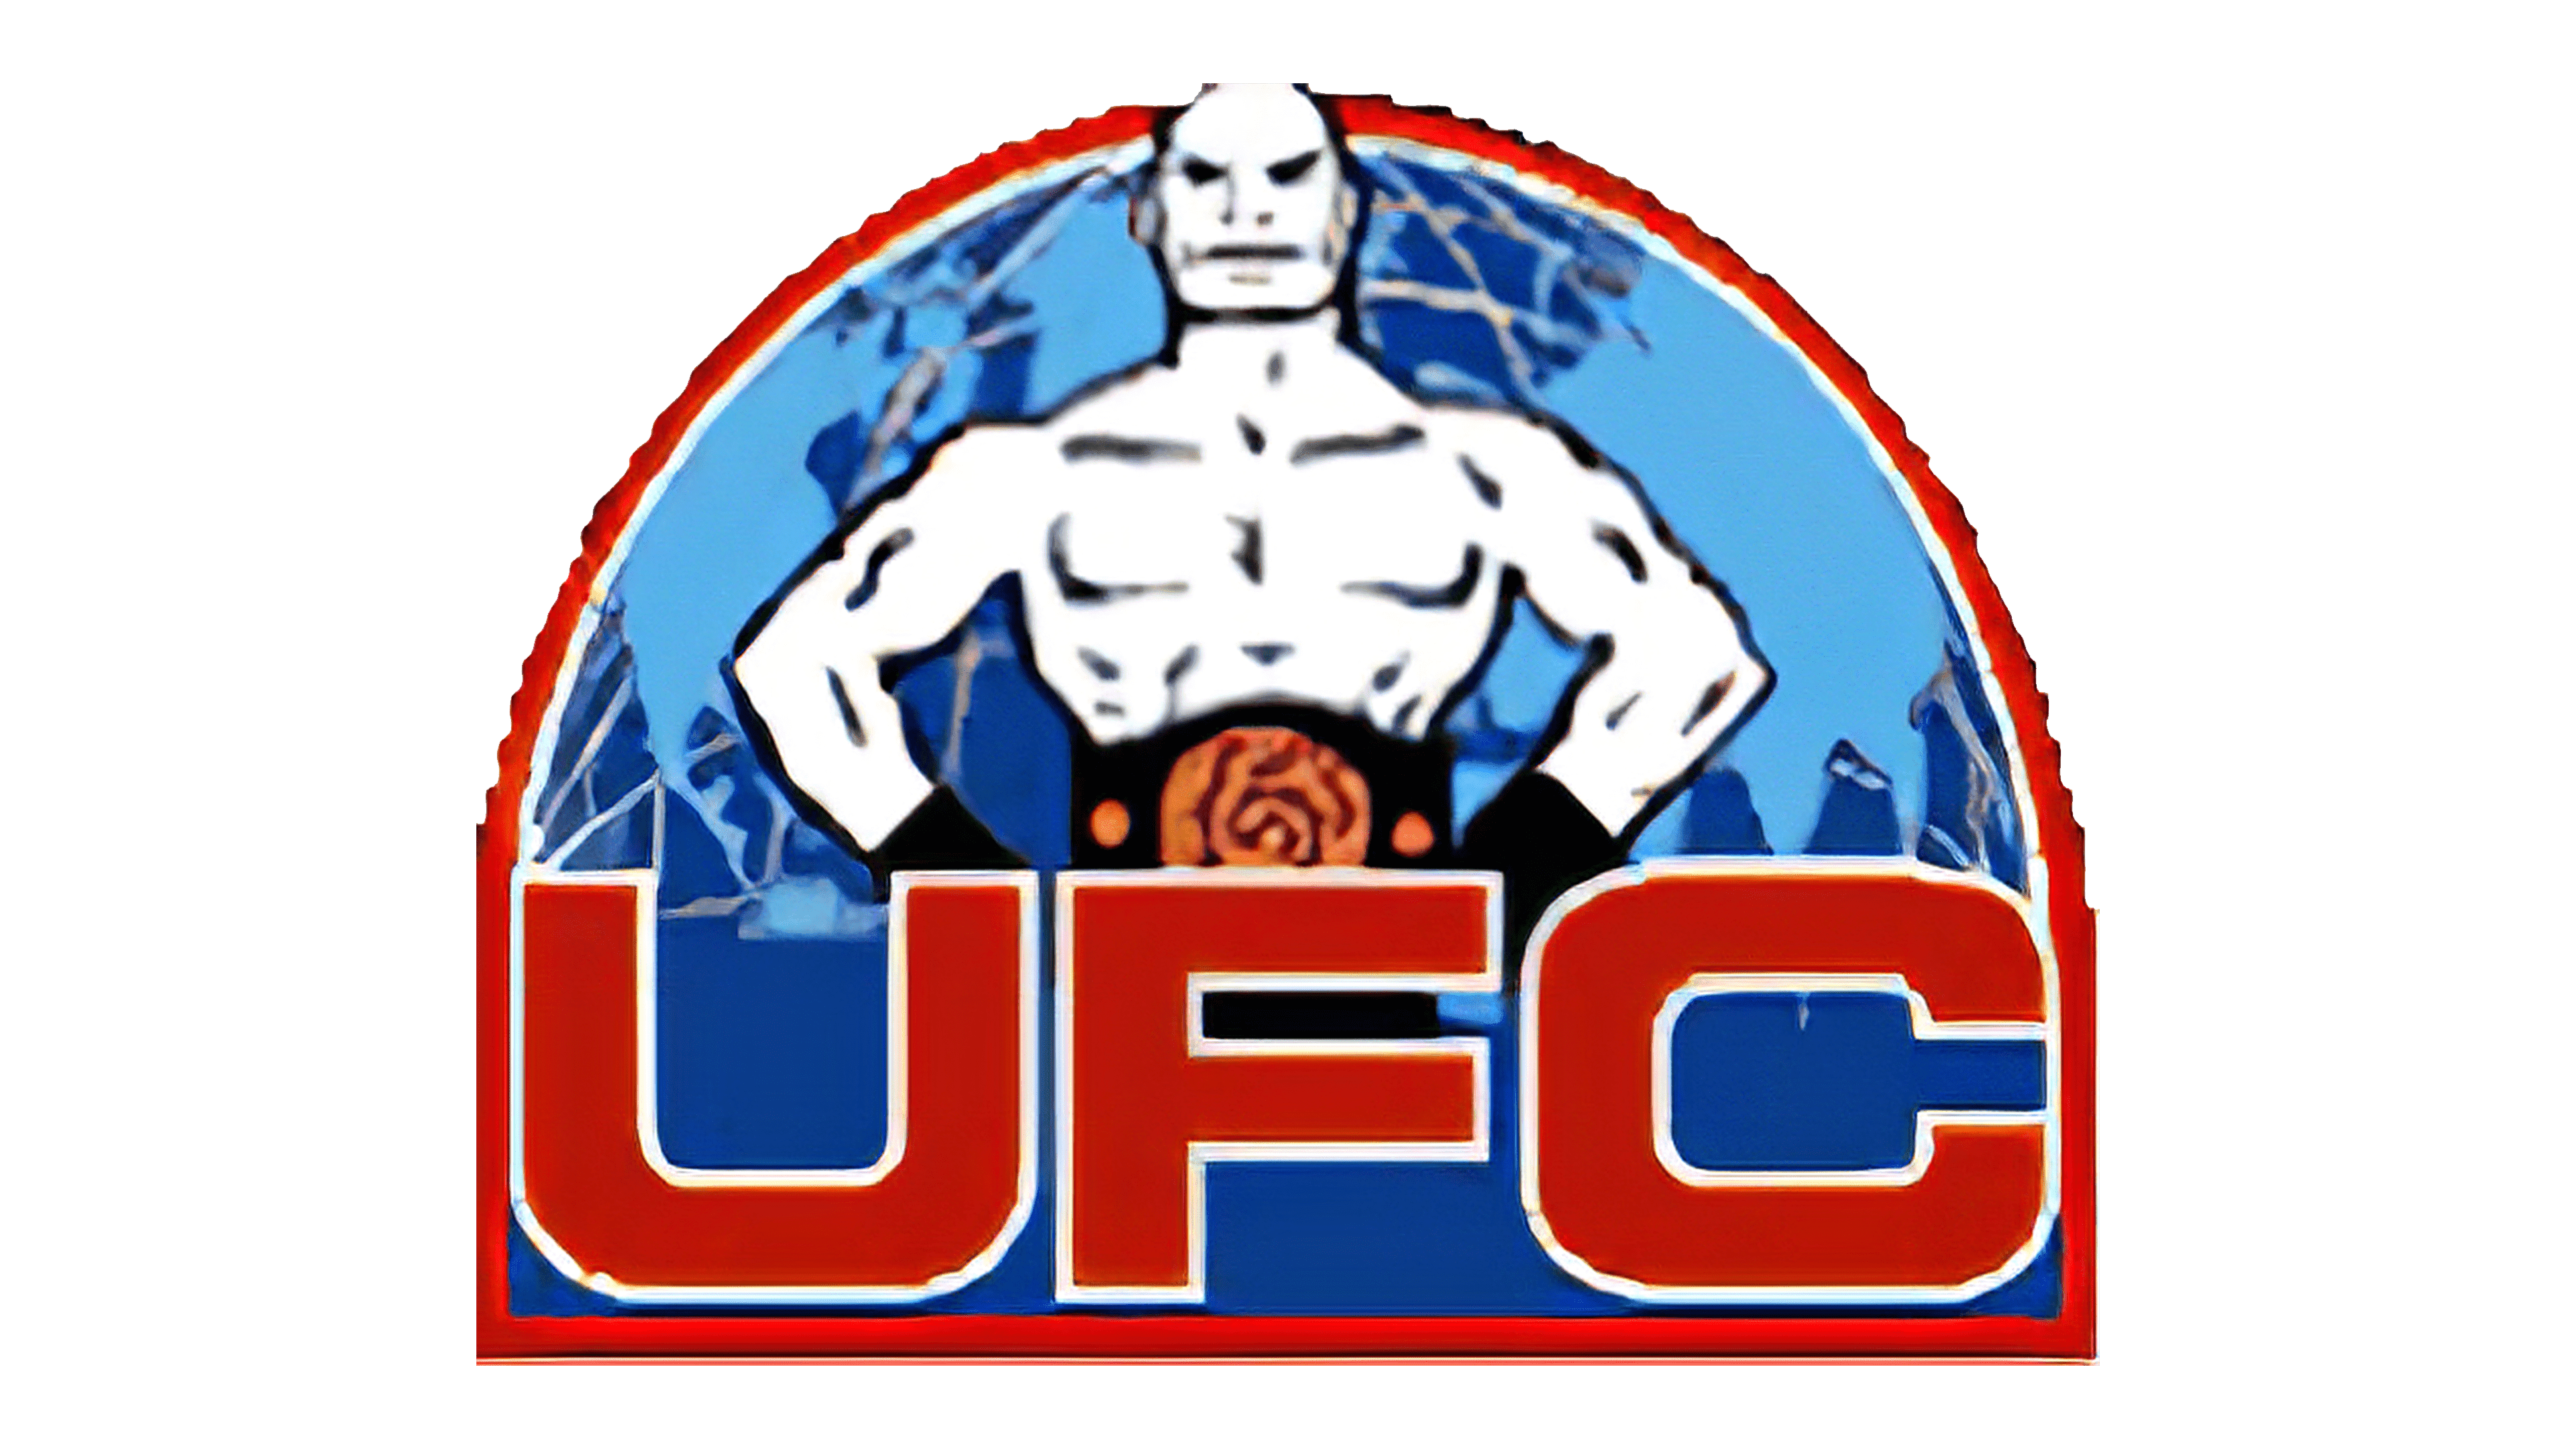 Original Ufc Logo